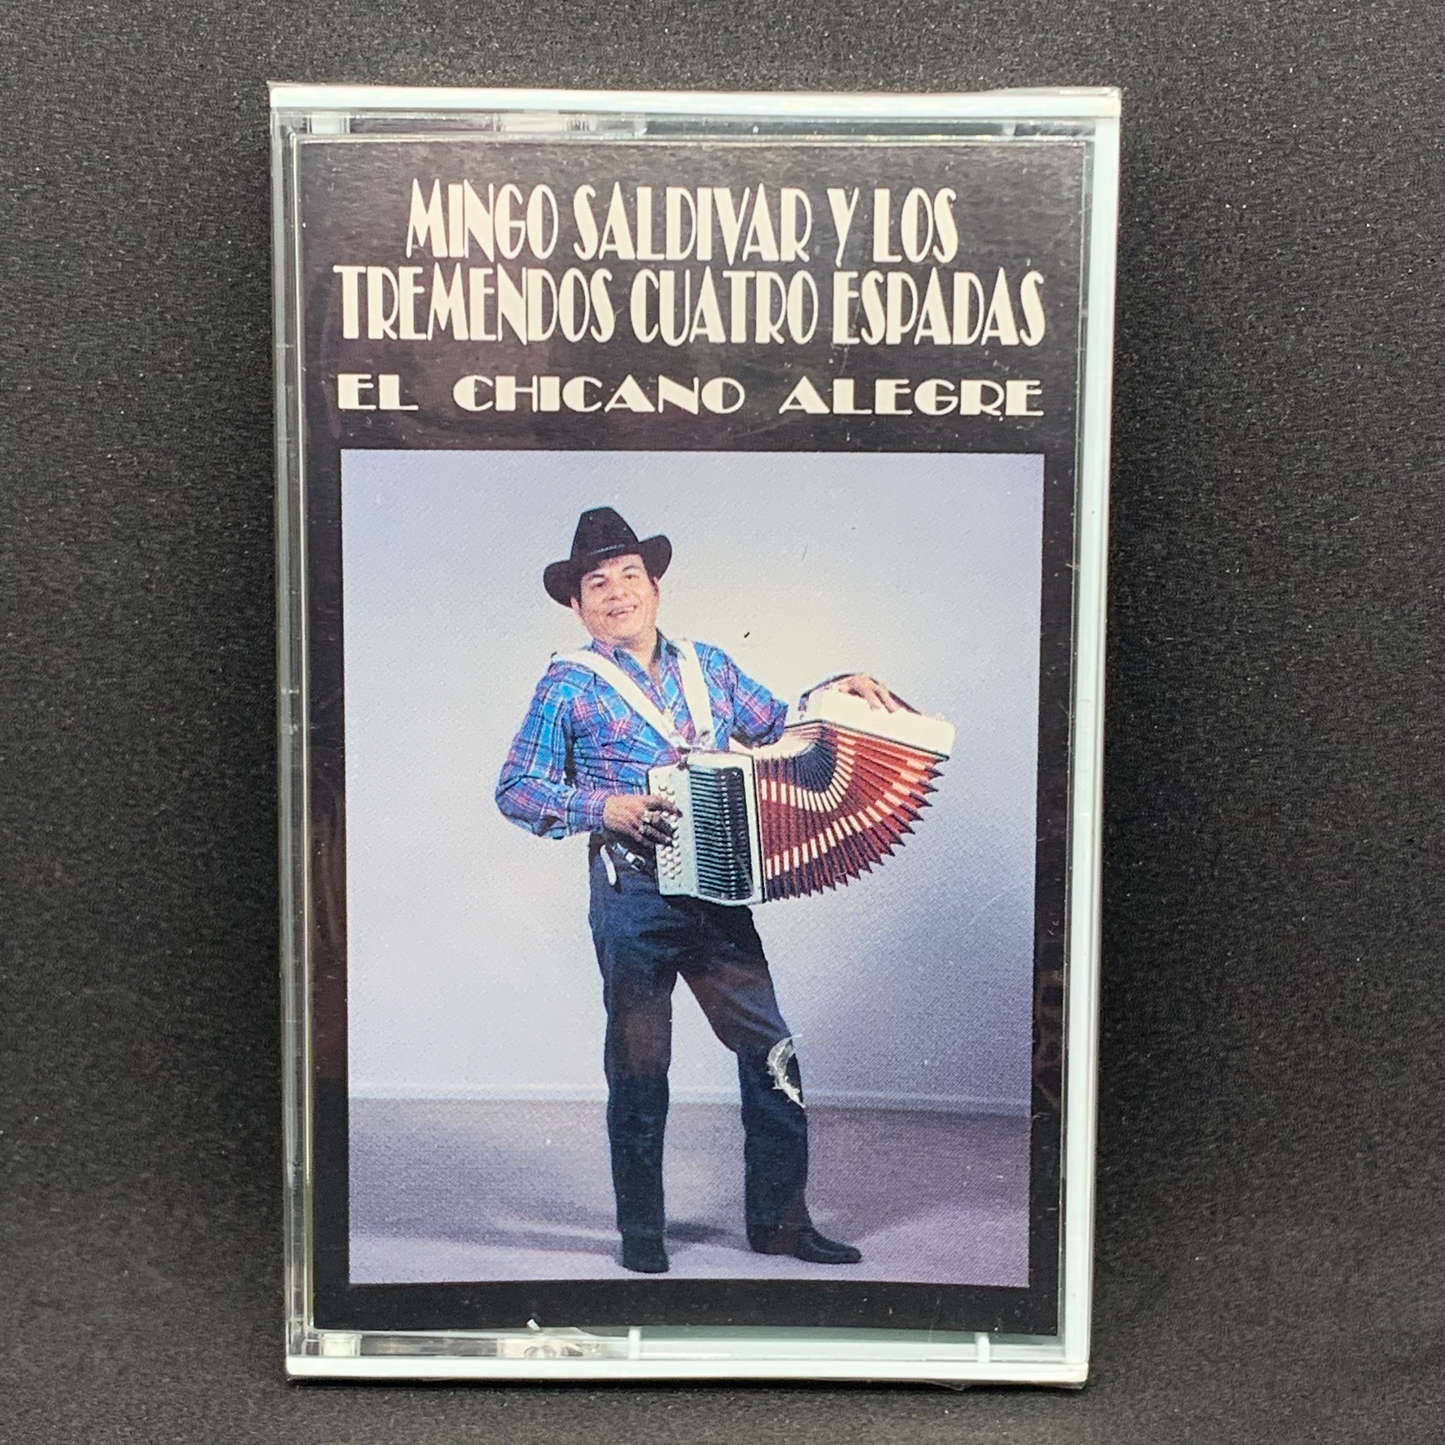 Mingo Saldivar y Los Tremendos Cuatro Espadas - El Chicano Alegre (Cassette)